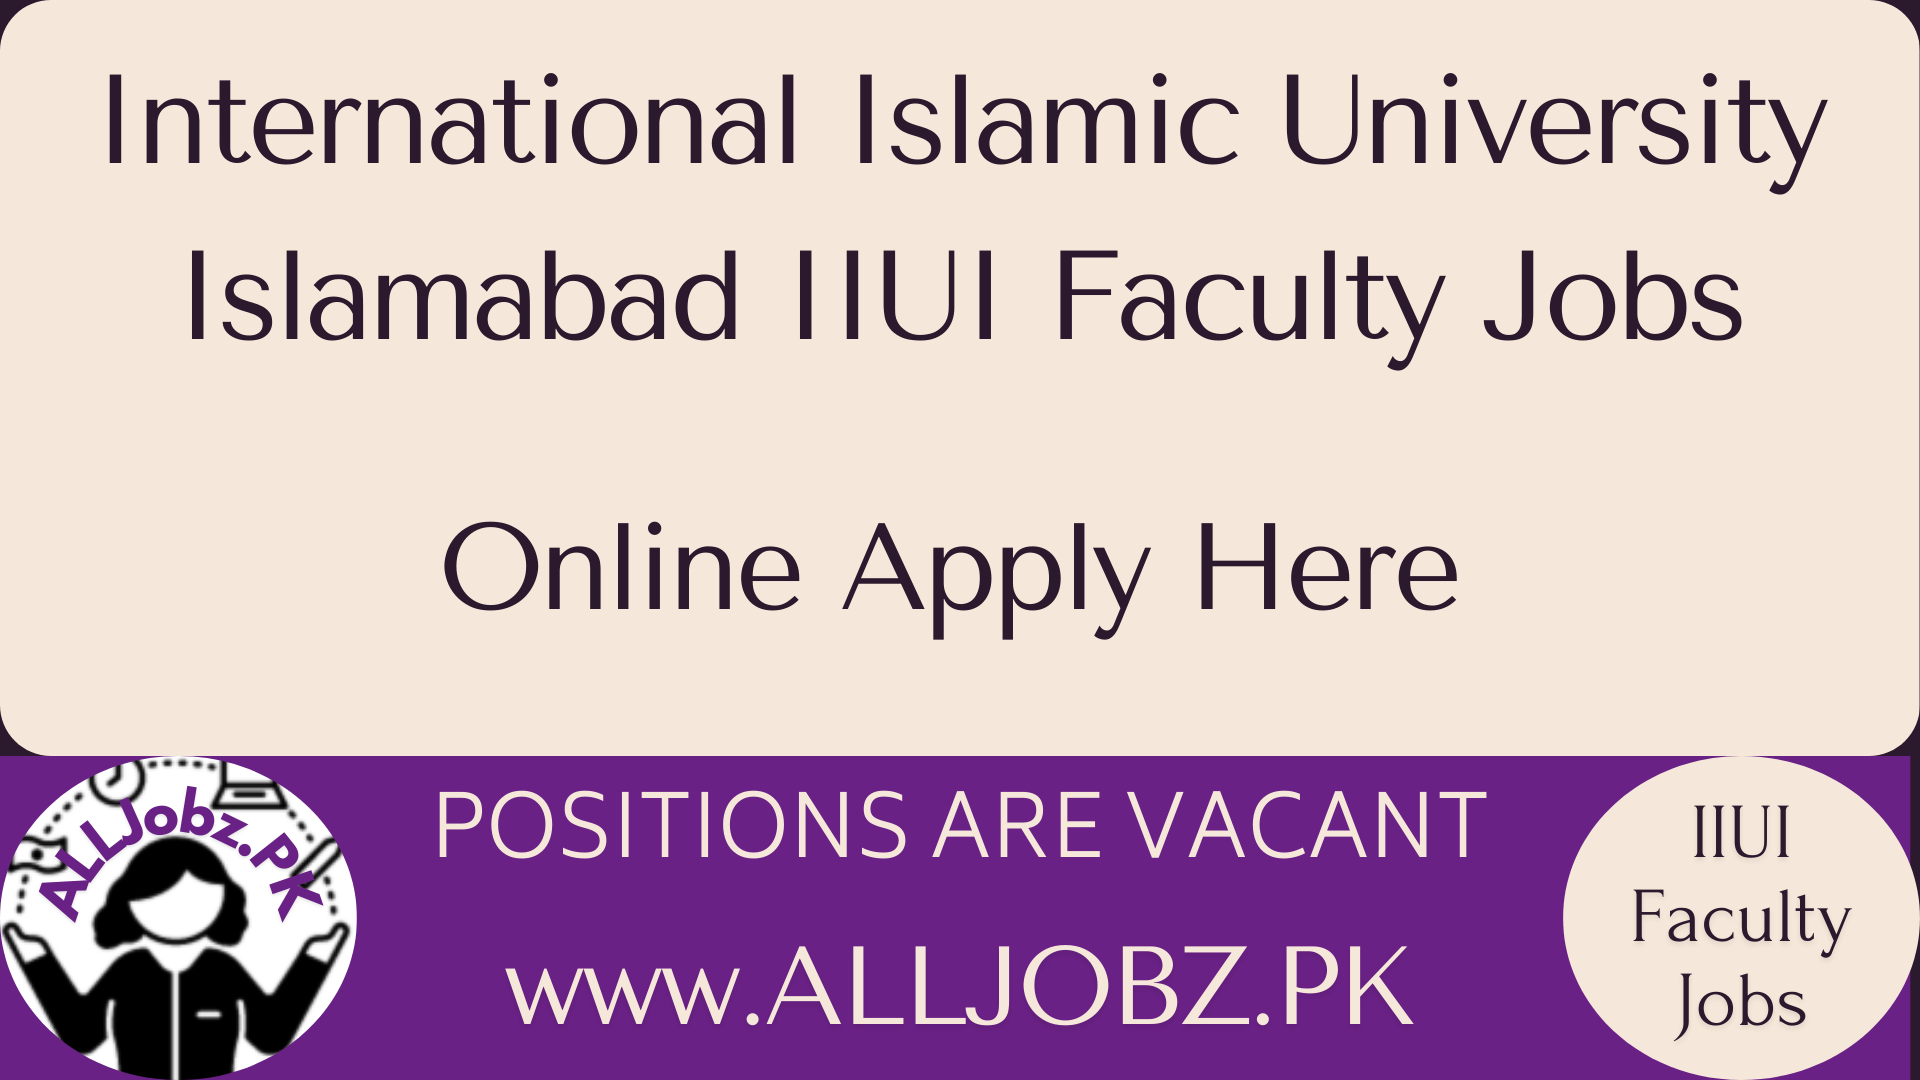 International Islamic University Islamabad Iiui Faculty Jobs, Iiui Faculty Jobs,